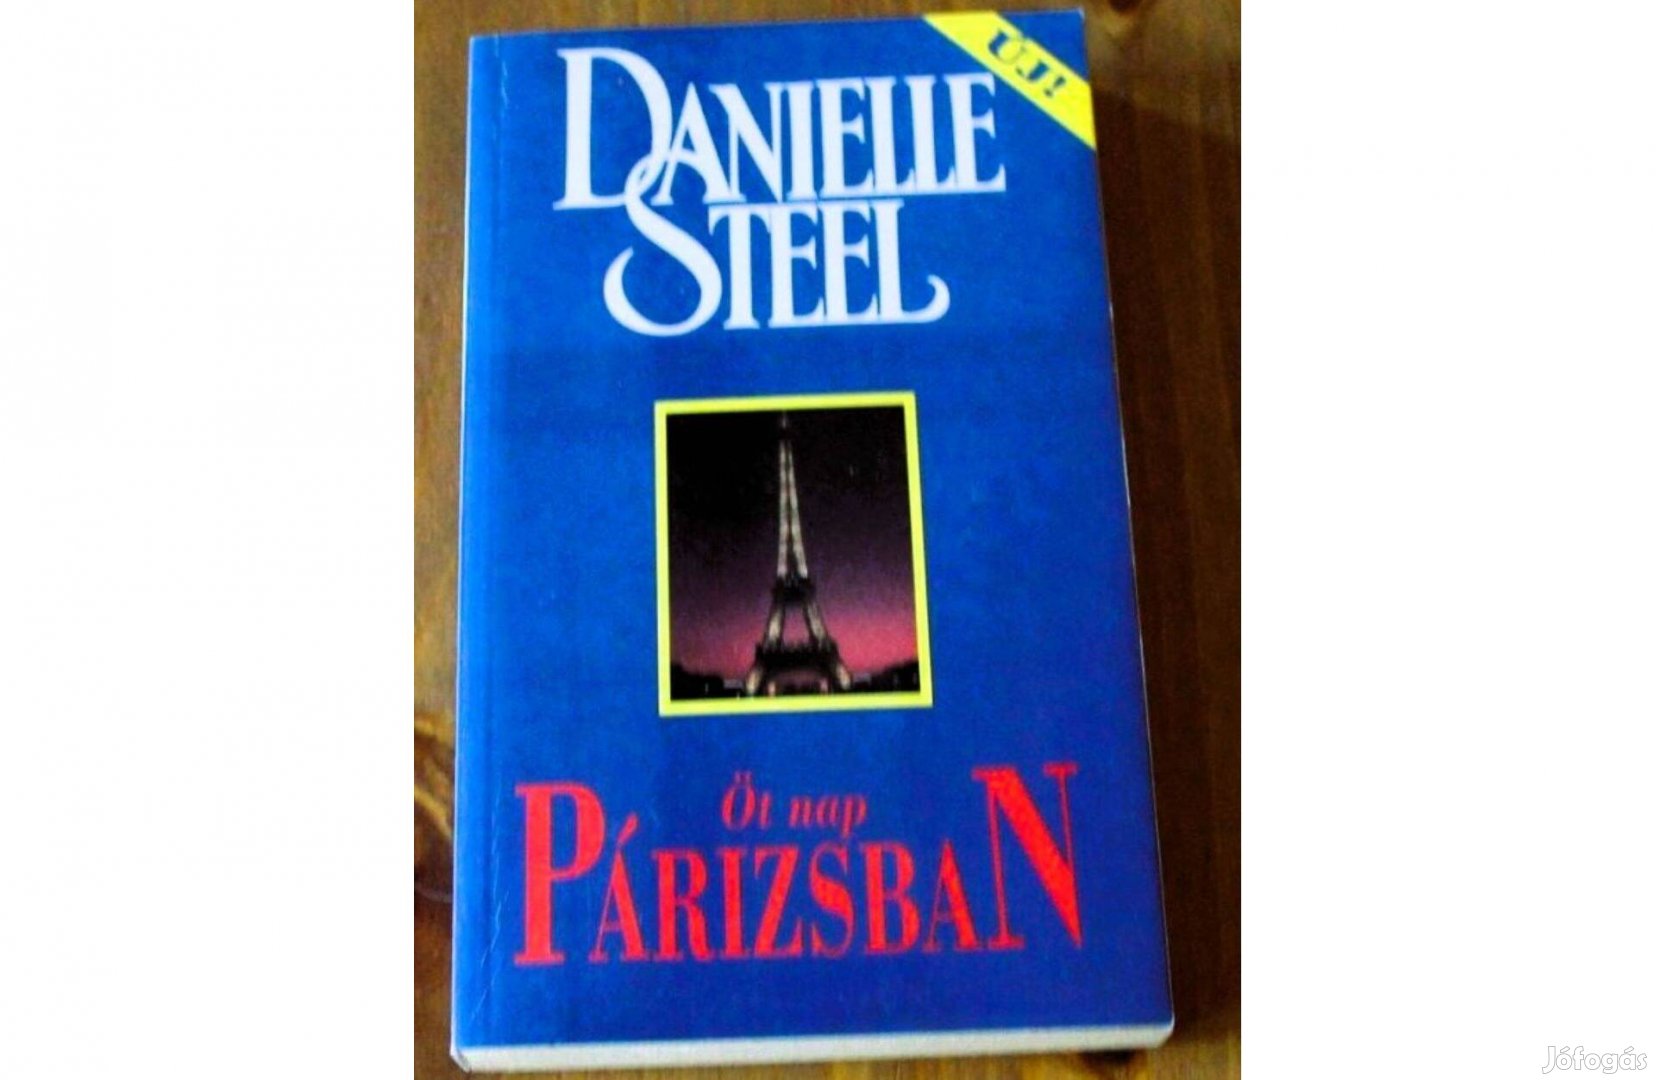 Danielle Steel könyvcsomag (4 db ) 500 Ft/ db, Akár darabonként is